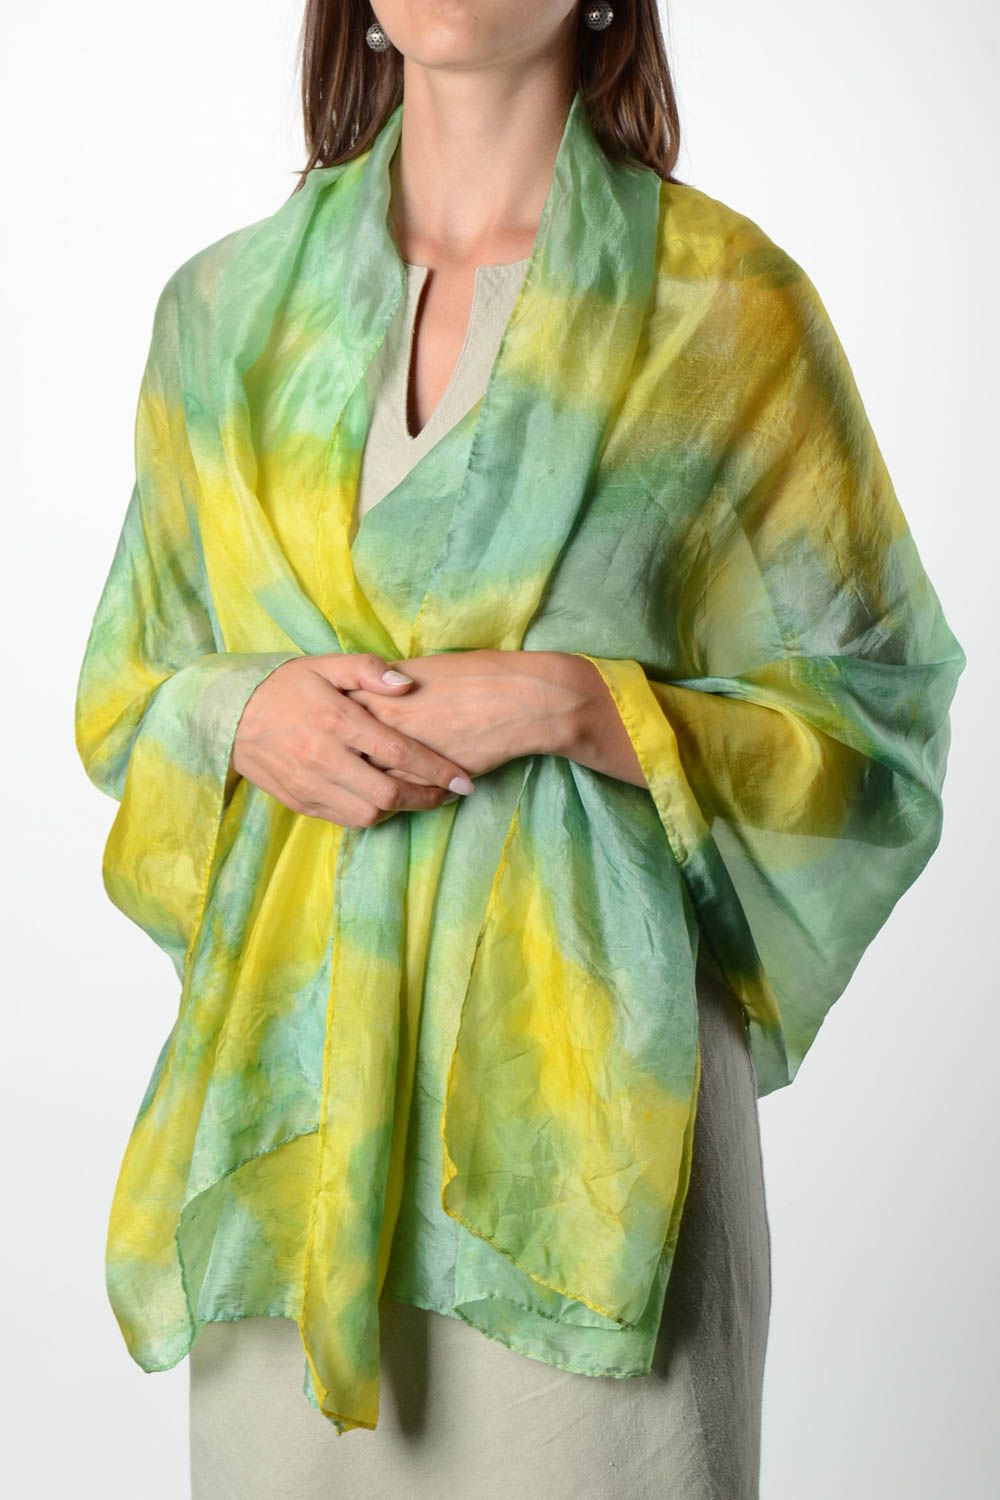 Handmade Damen Stola gelb grüner Designer Schal Accessoire für Frauen foto 1